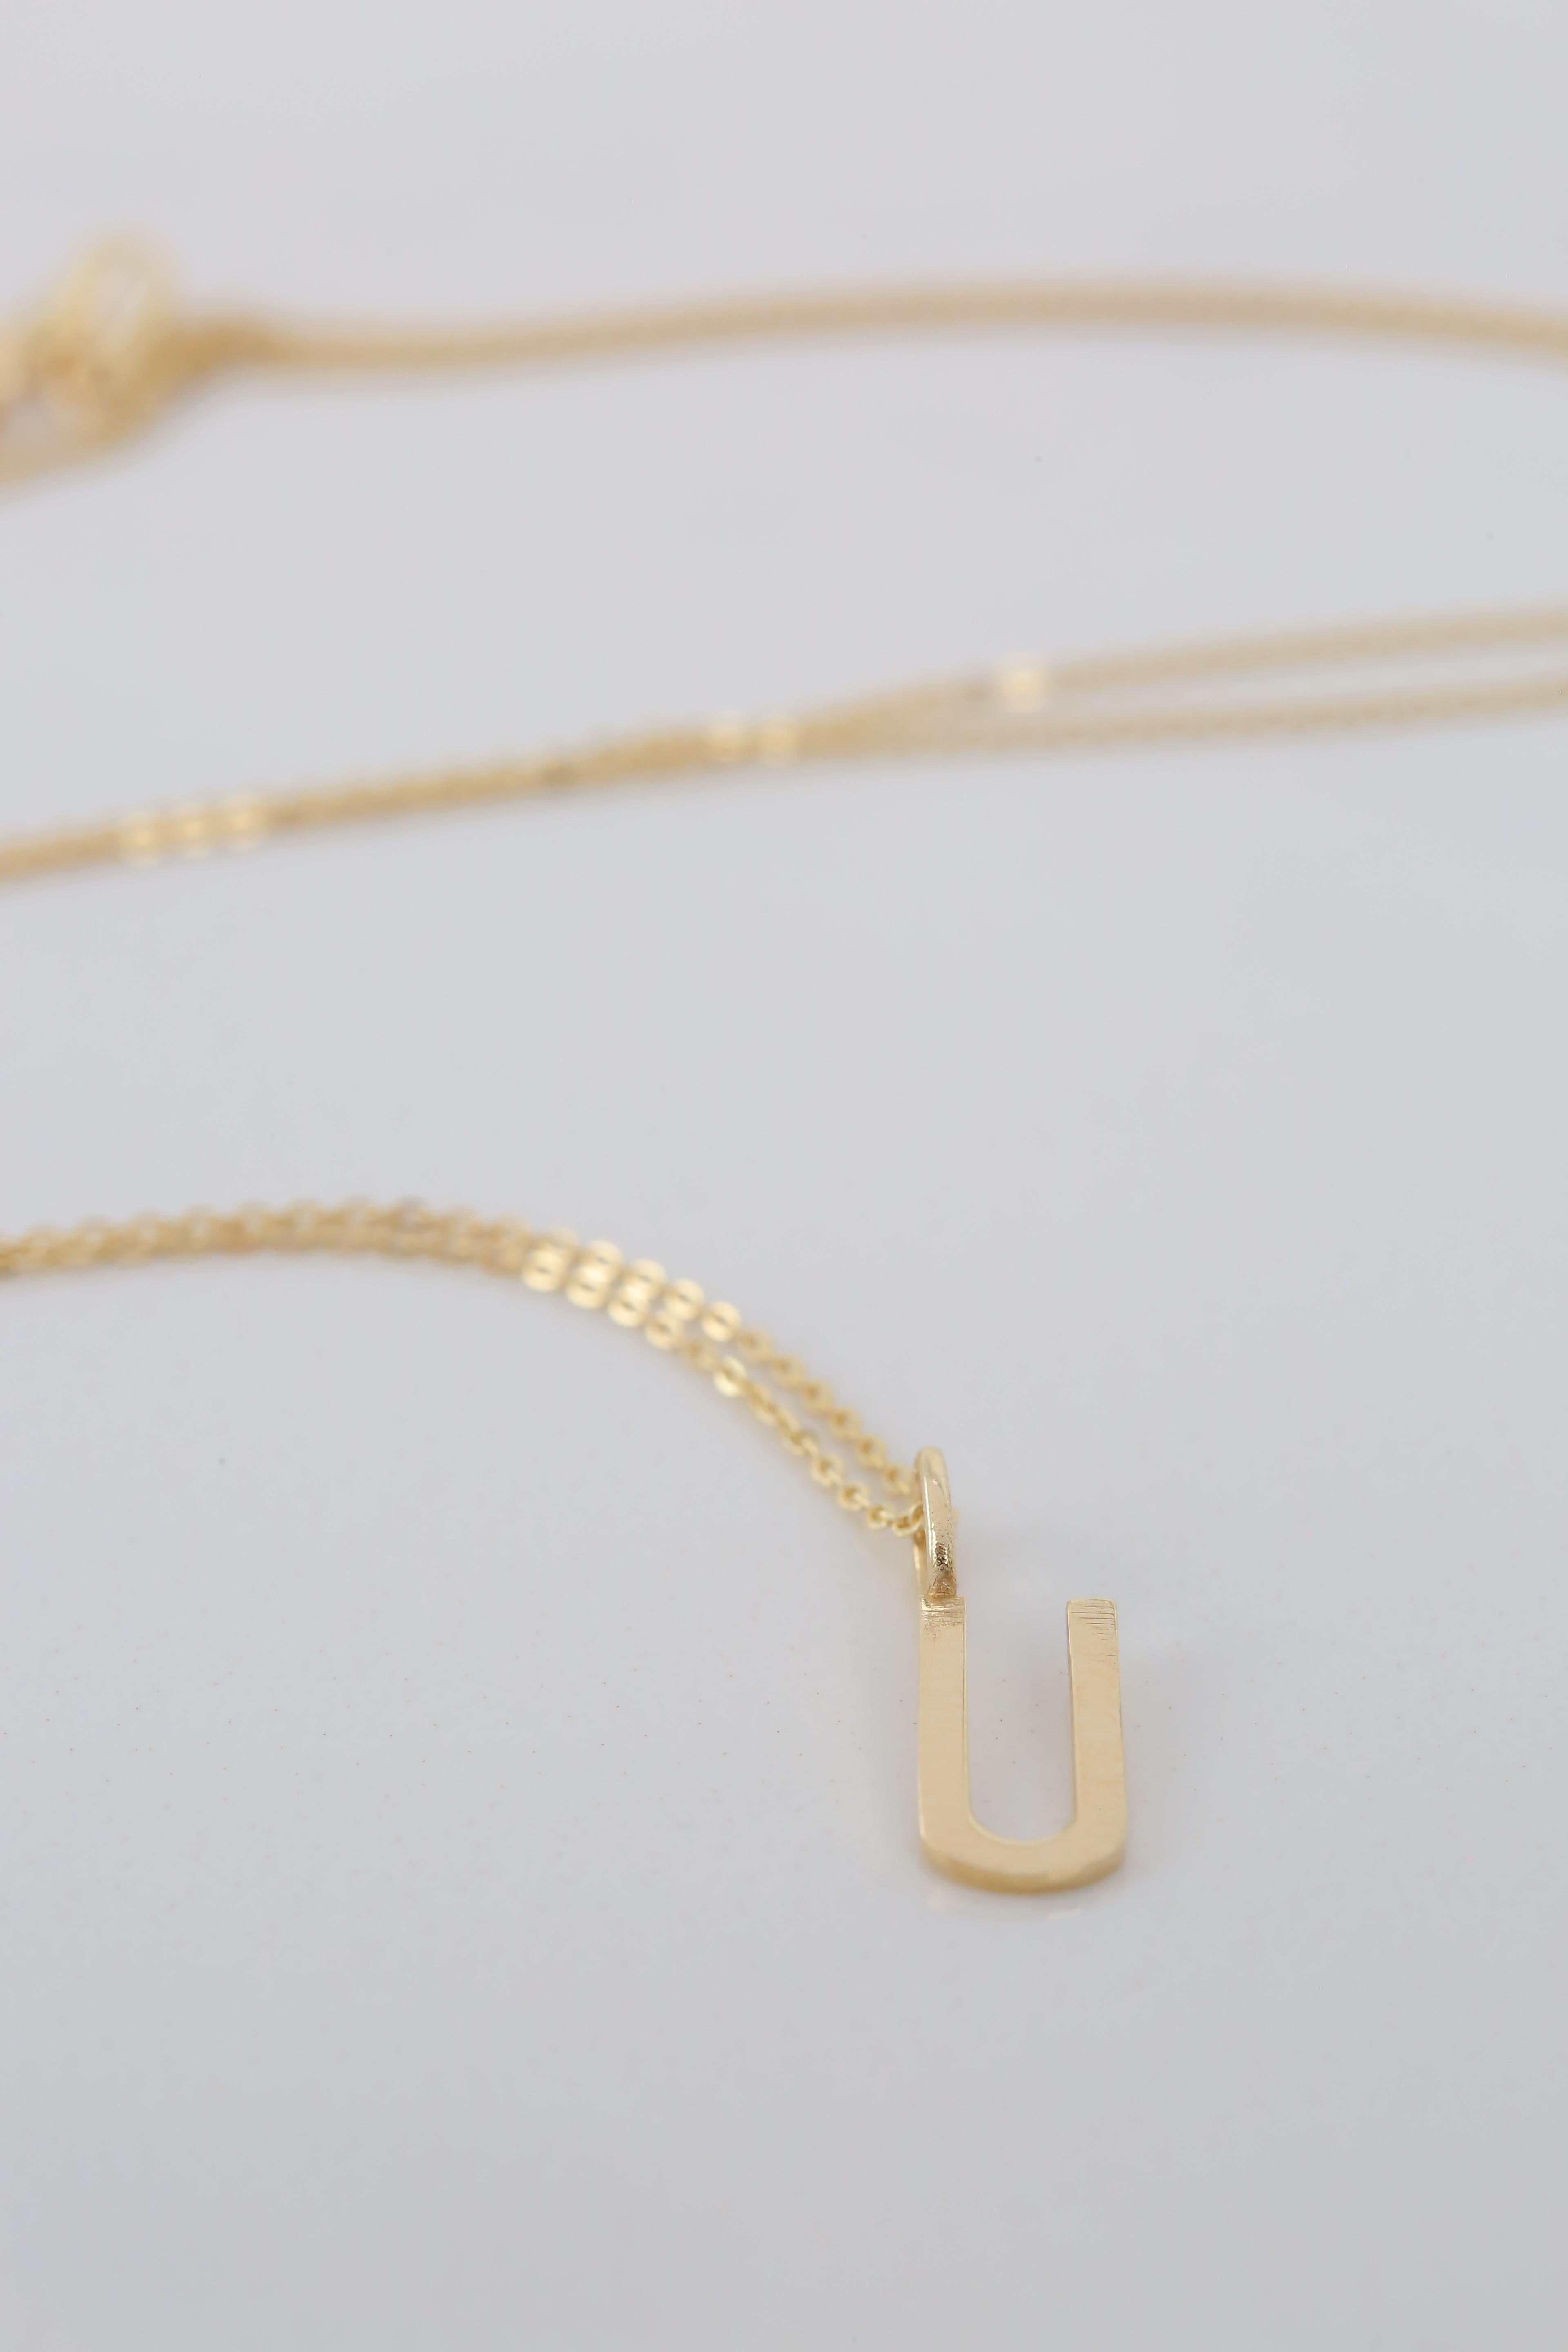 Modern 14k Gold Necklaces, Letter Necklace Models, Letter U Gold Necklace-Gift Necklace For Sale